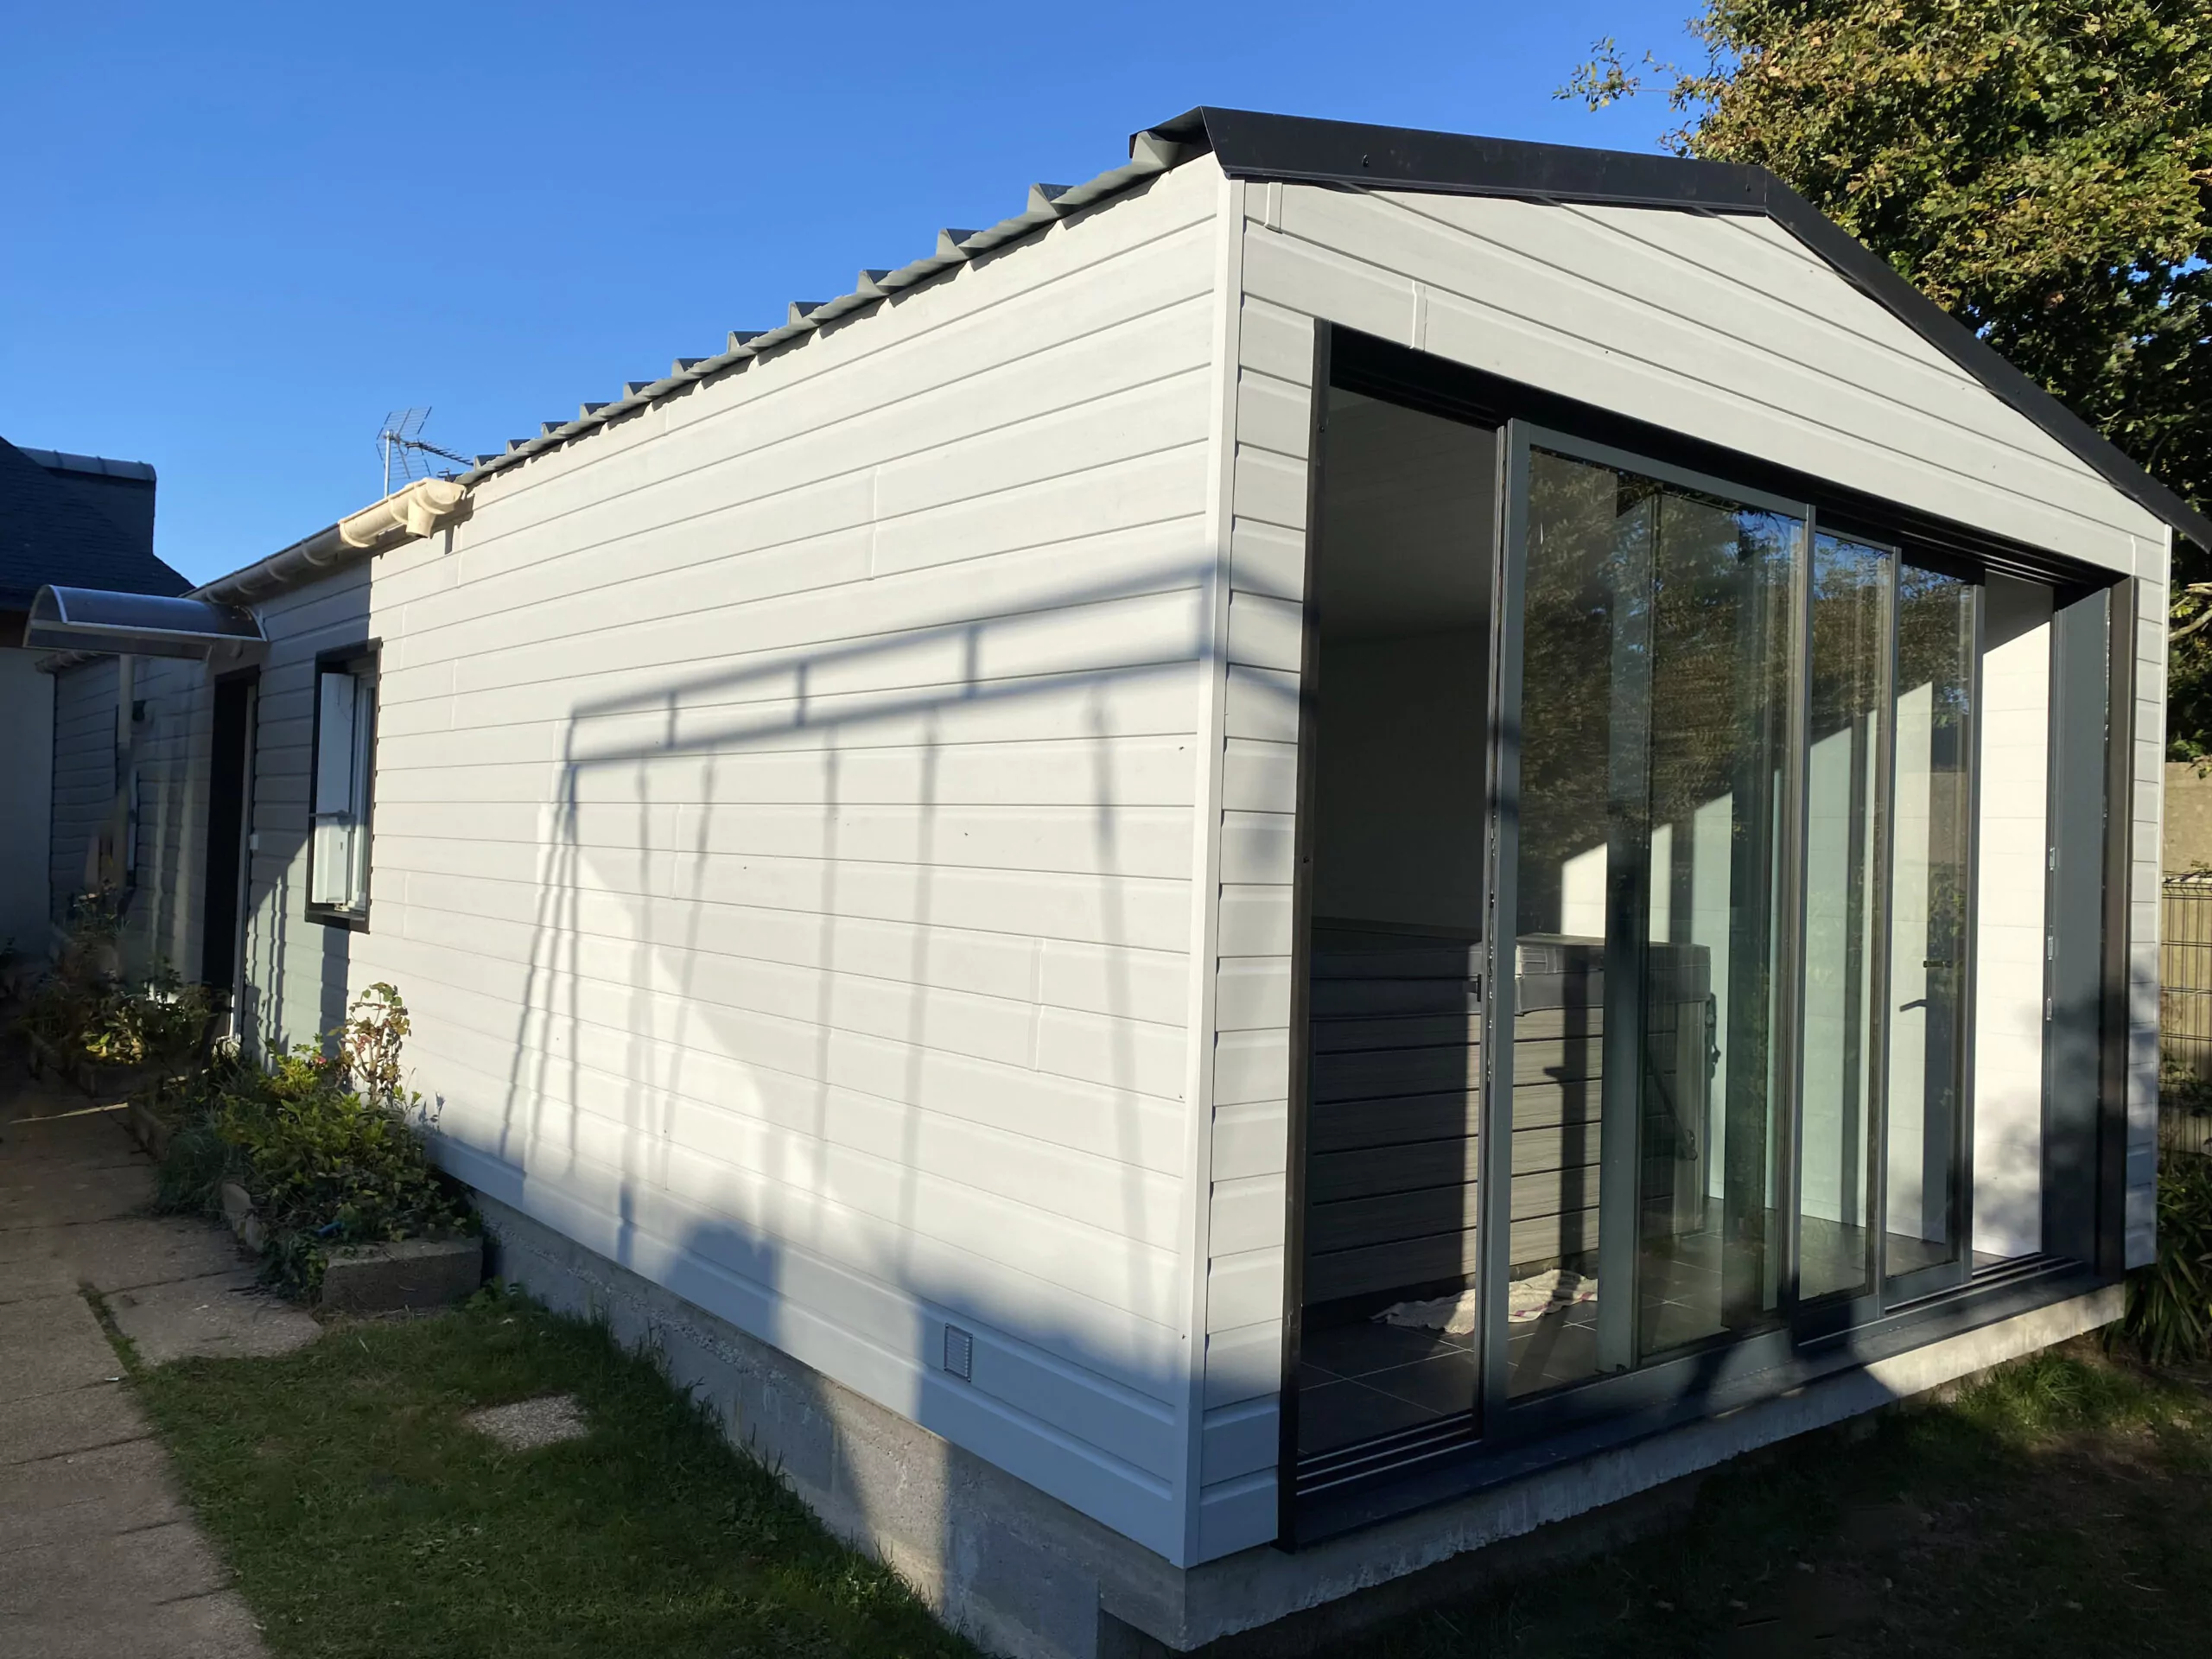 Extension ossature bois, toiture double pente en bac acier anti-condensation. Bardage extérieur en PVC double lame. Lambris blanc pour les finitions intérieures